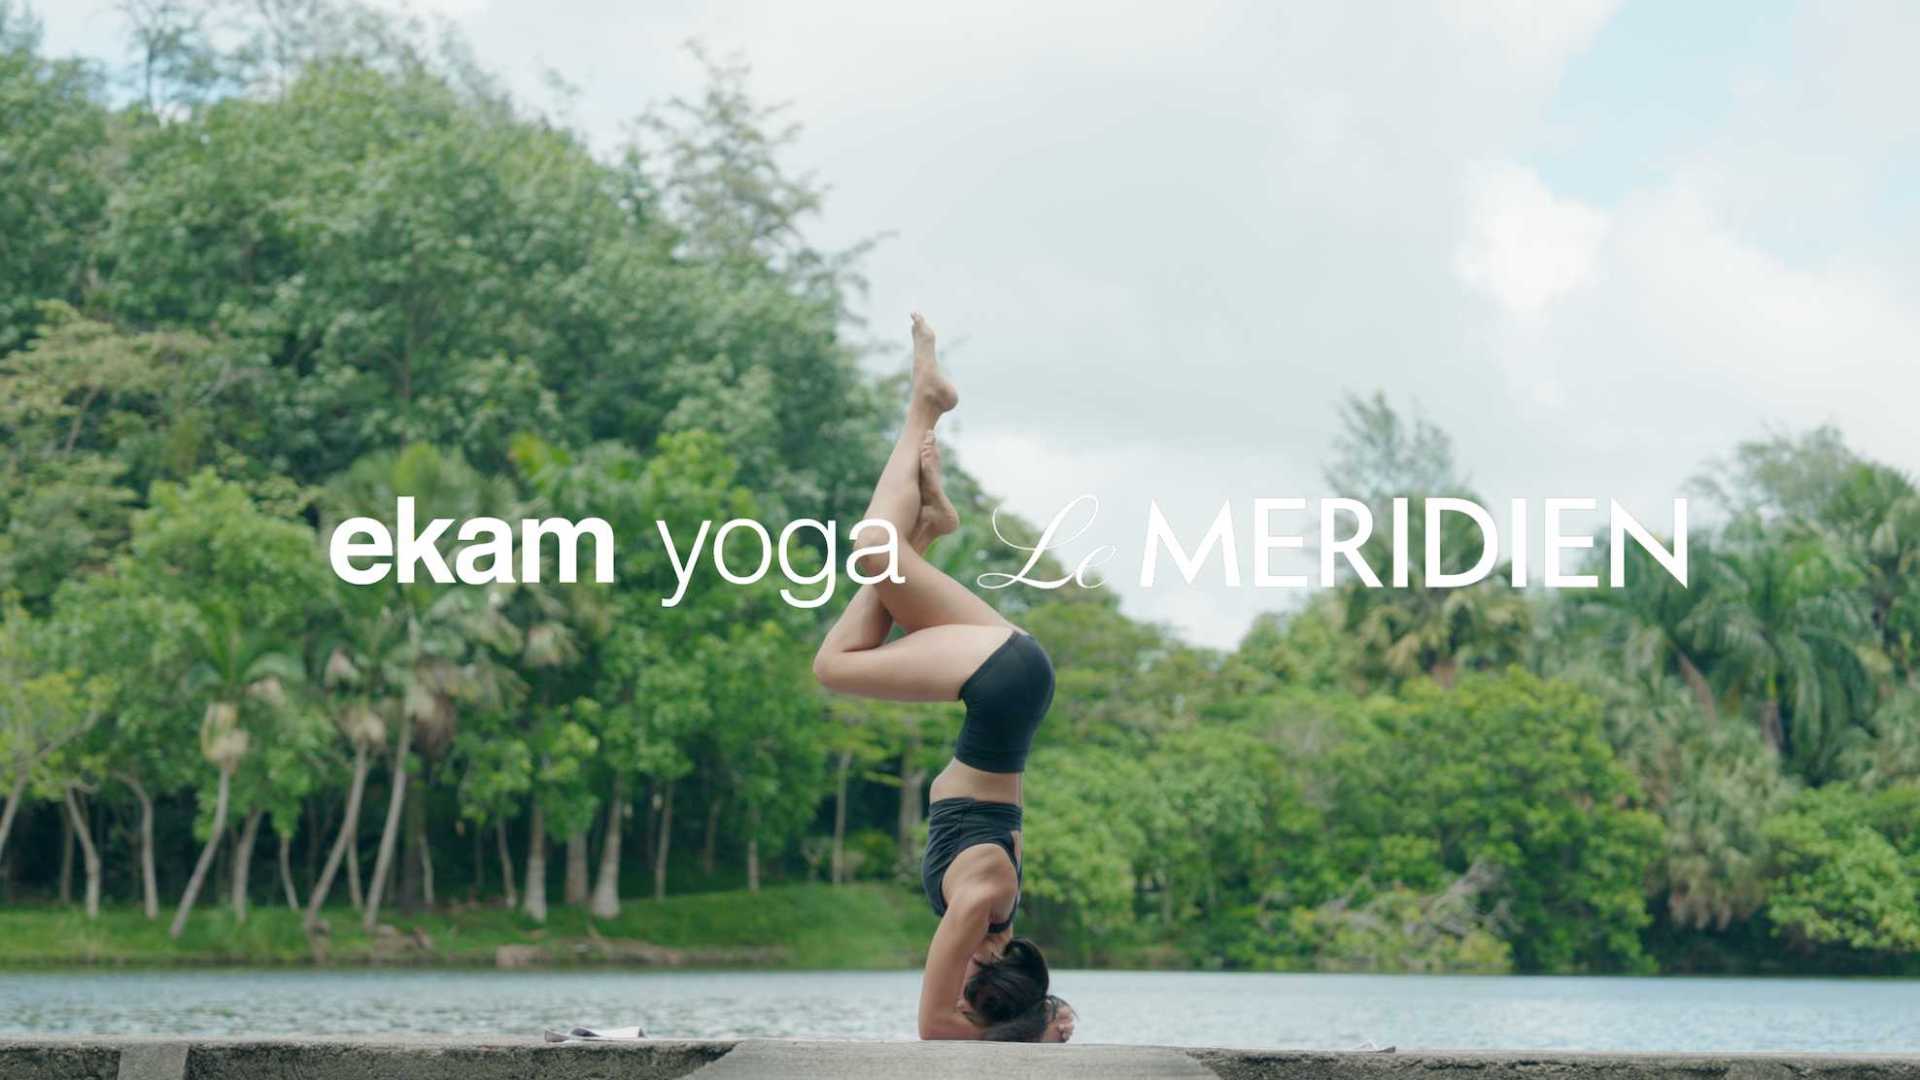 艾美酒店&ekam yoga瑜伽短片